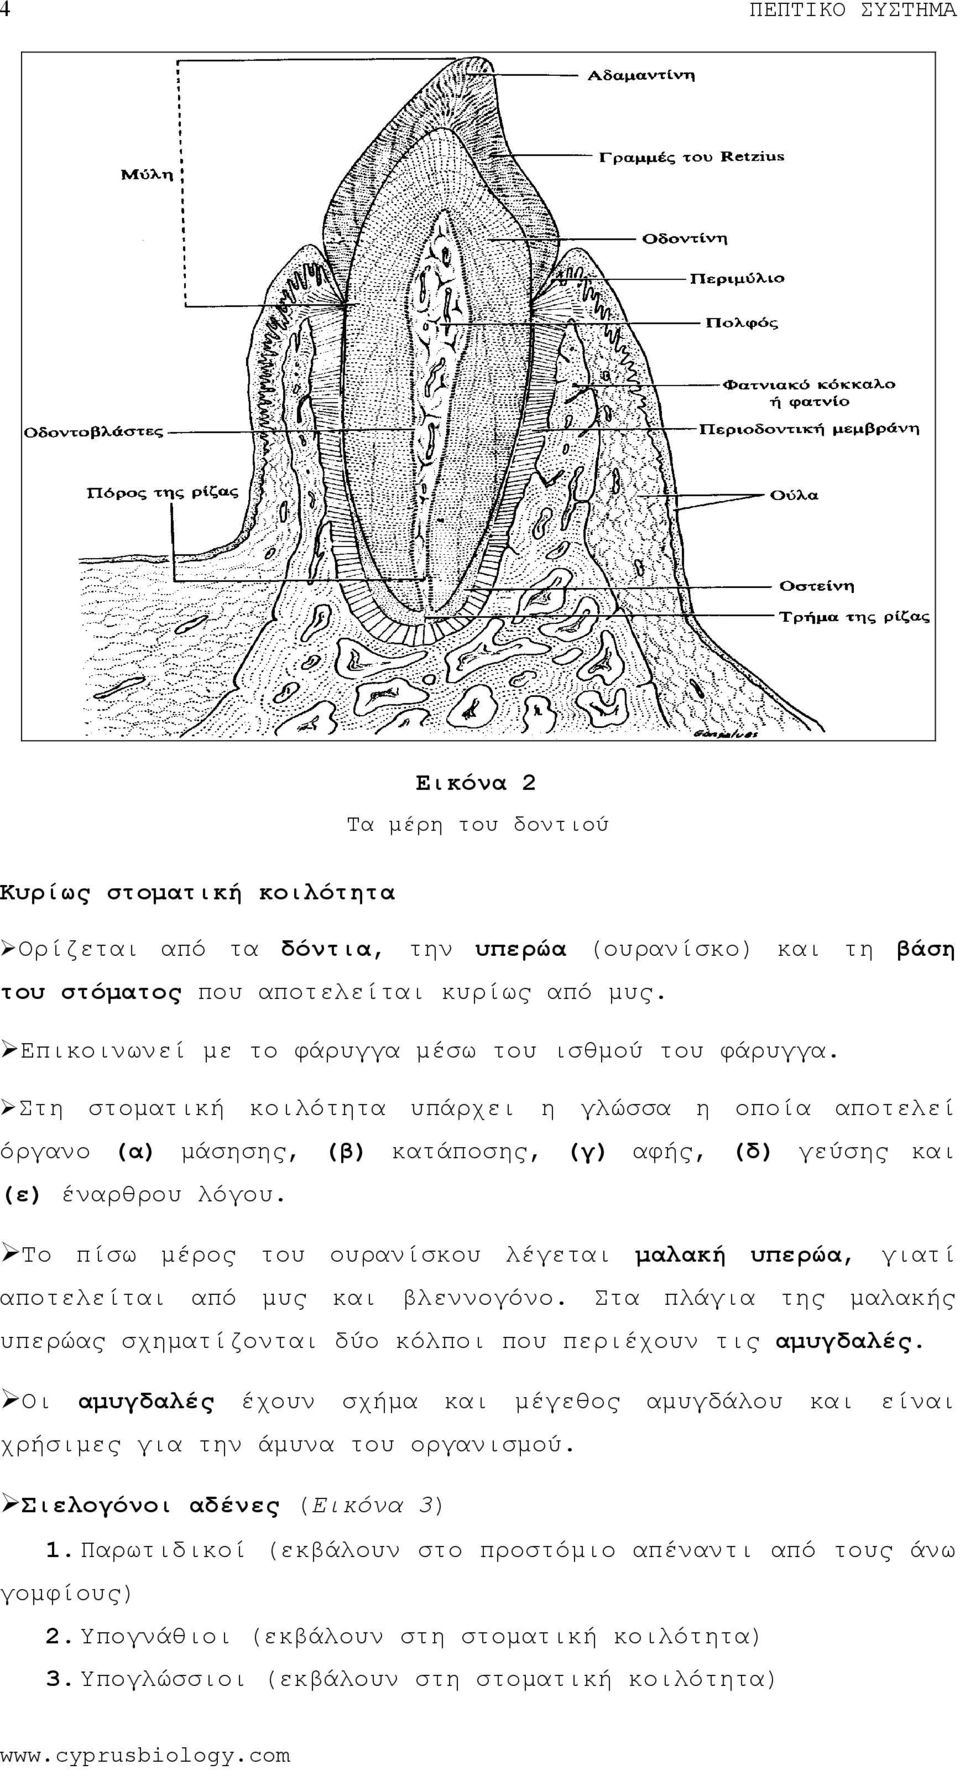 Το πίσω μέρος ουρανίσκου λέγεται μαλακή υπερώα, γιατί αποτελείται μυς βλεννογόνο. Στα πλάγια της μαλακής υπερώας σχηματίζονται δύο κόλποι που περιέχουν τις αμυγδαλές.